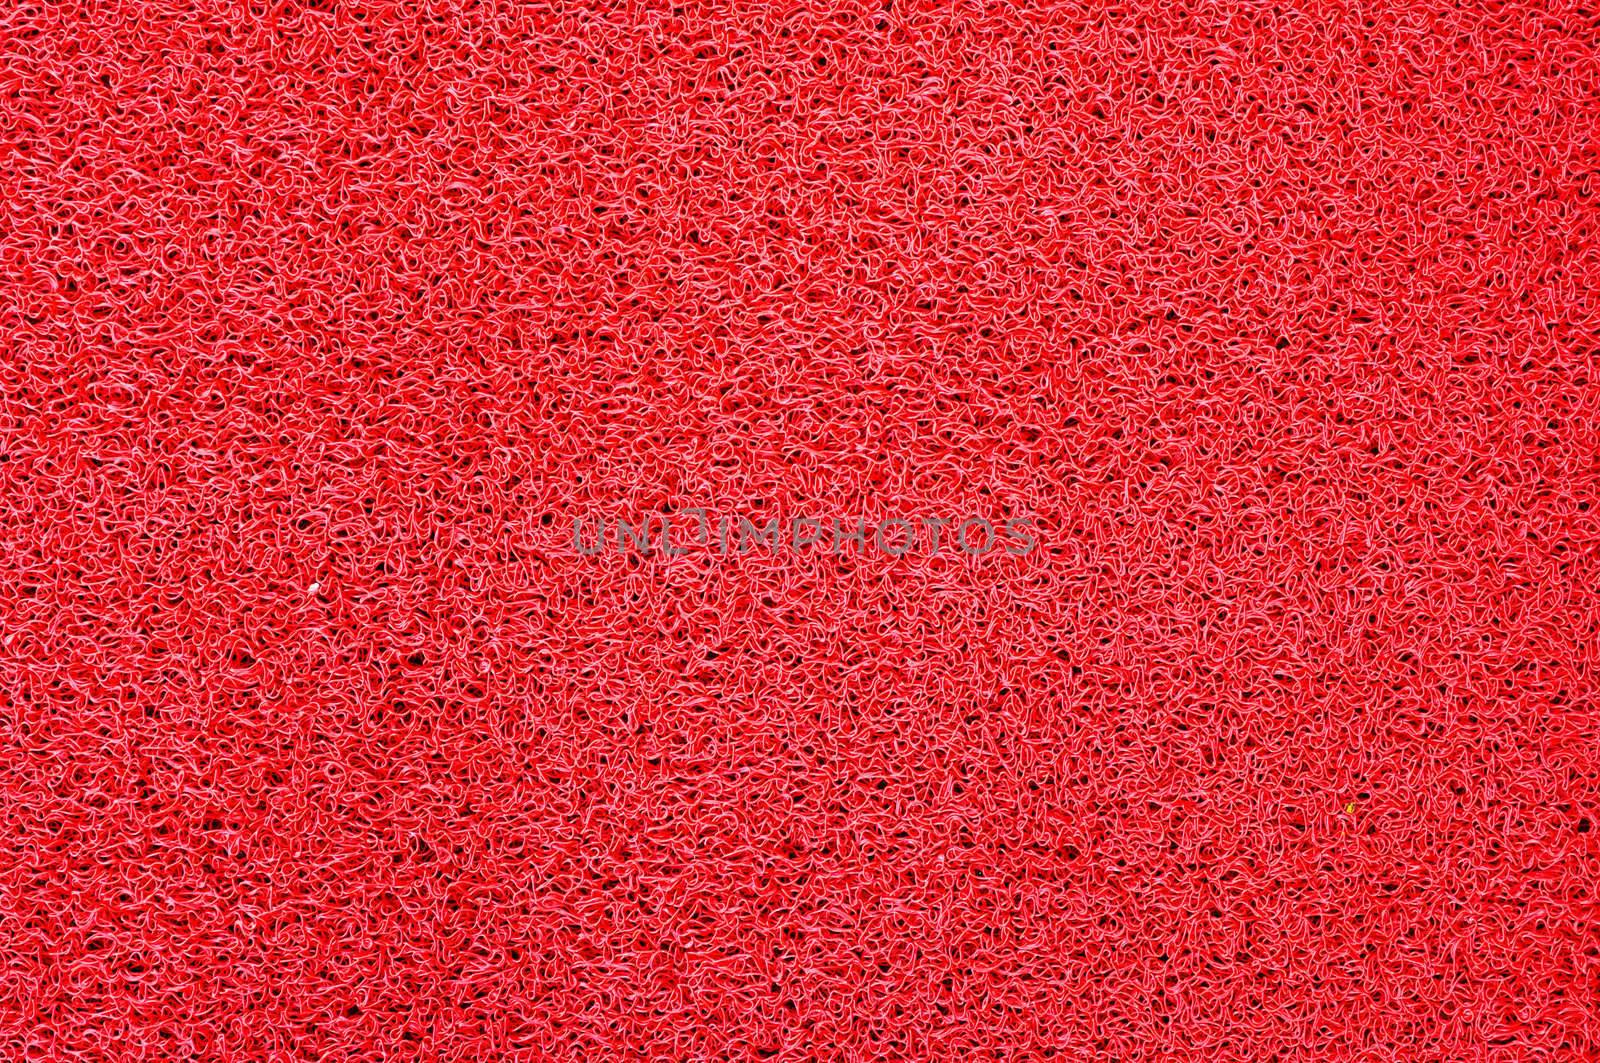 Texture of red Plastic doormat